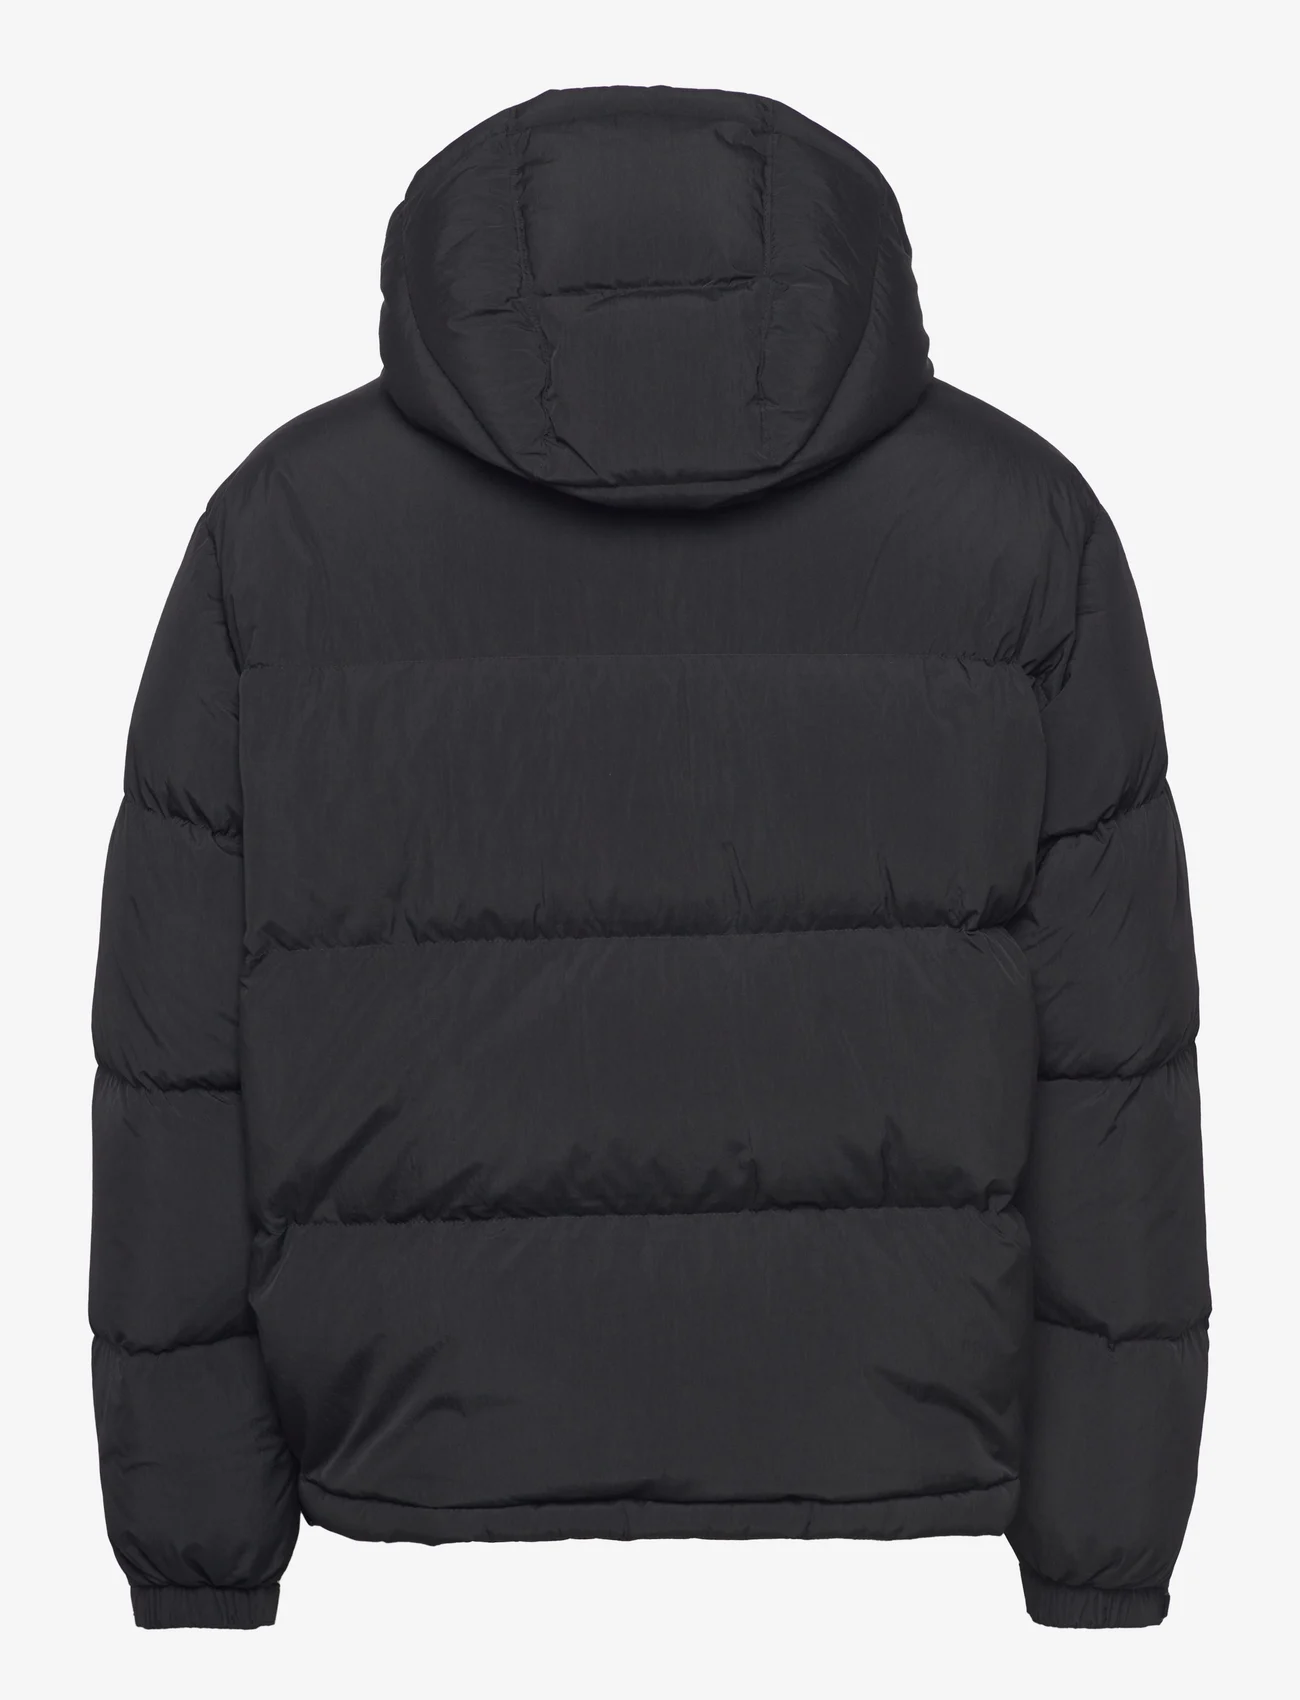 HUGO - Bironto2341 - padded jackets - black - 1